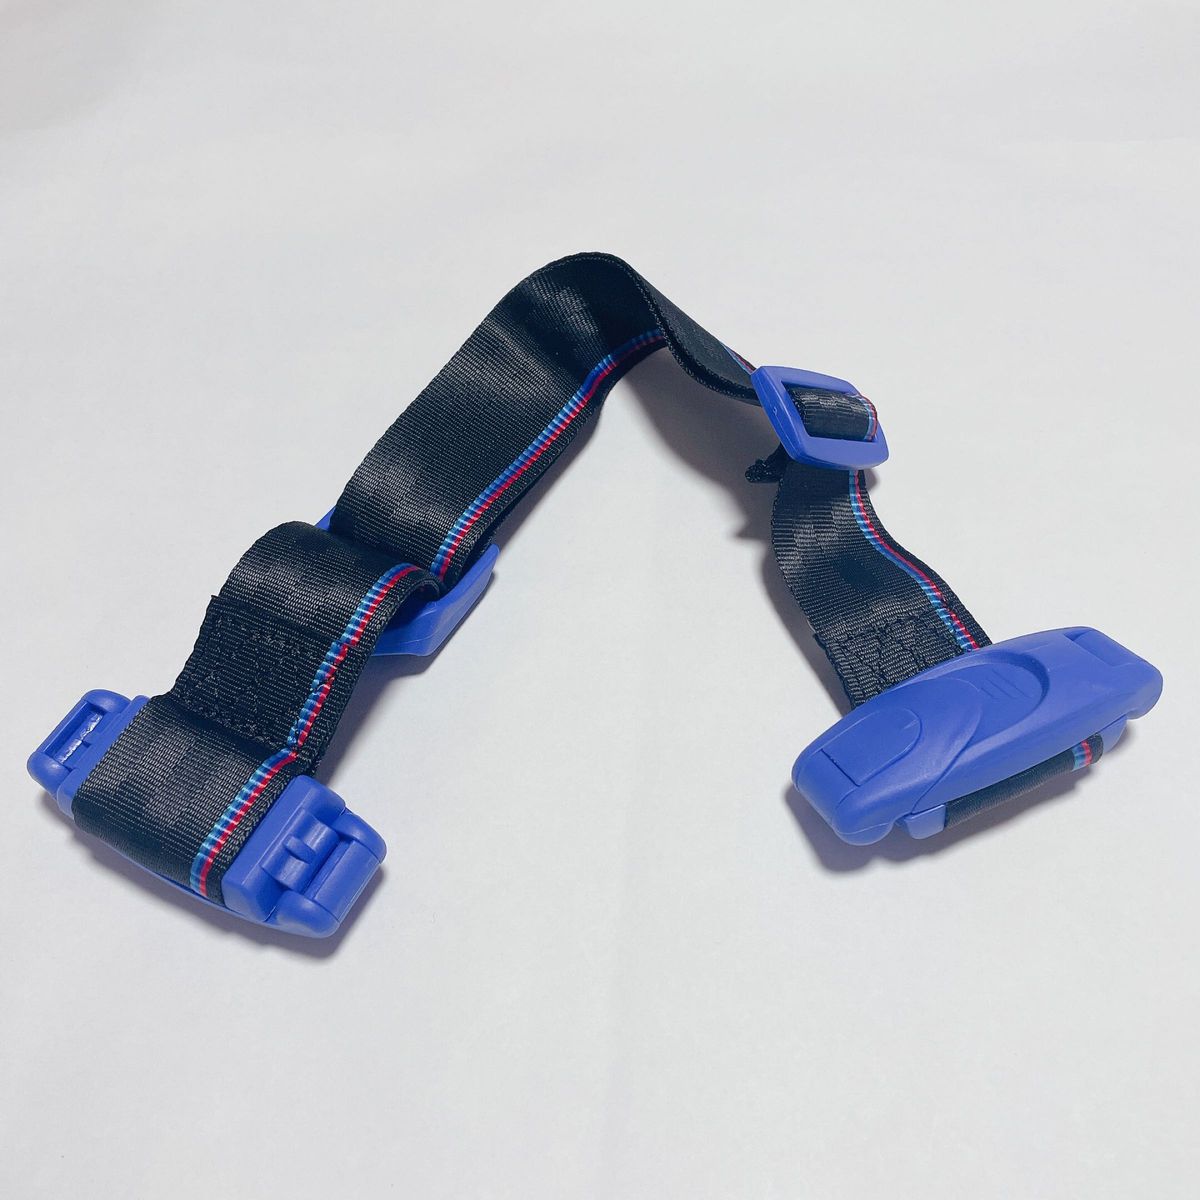 キッズ シートベルト チャイルド 安全 補助 子ども用 取り付け簡単 赤 レッド 青 ブルー 2点セット